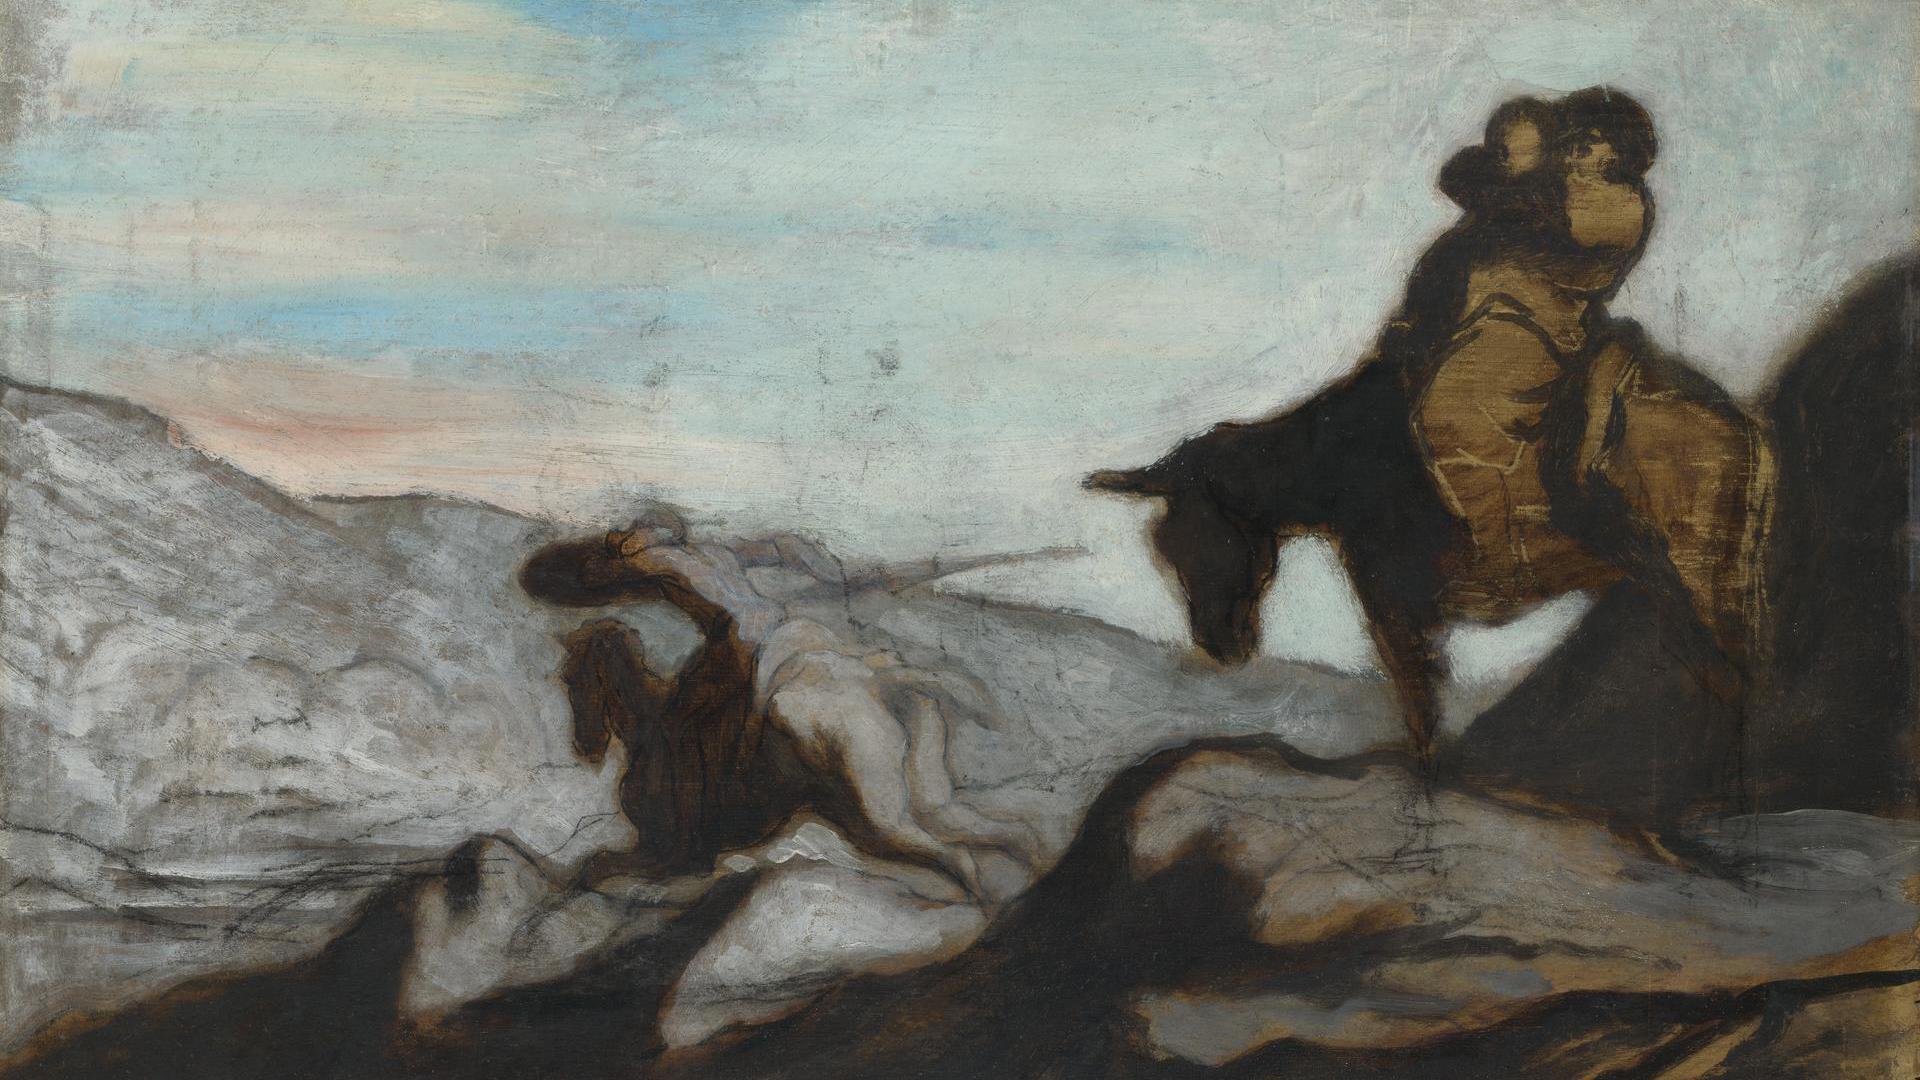 Honore Victorin Daumier Don Quixote And Sancho Panza Ng3244 National Gallery London